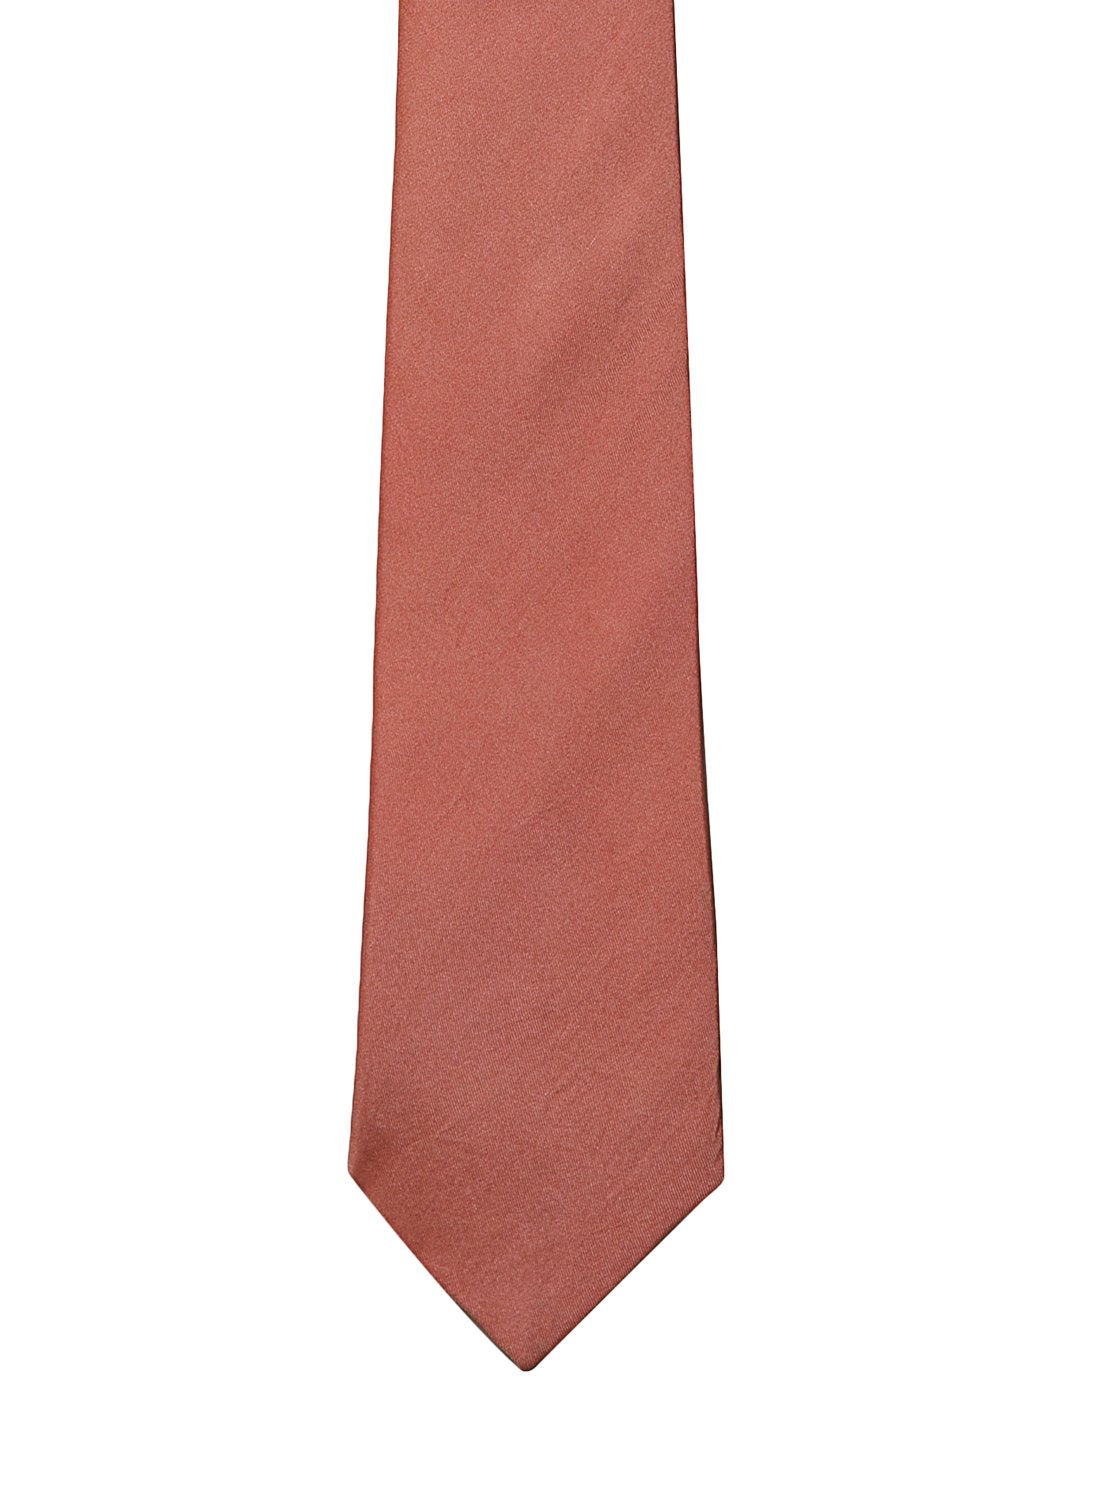 Rose Pink color silk tie for men